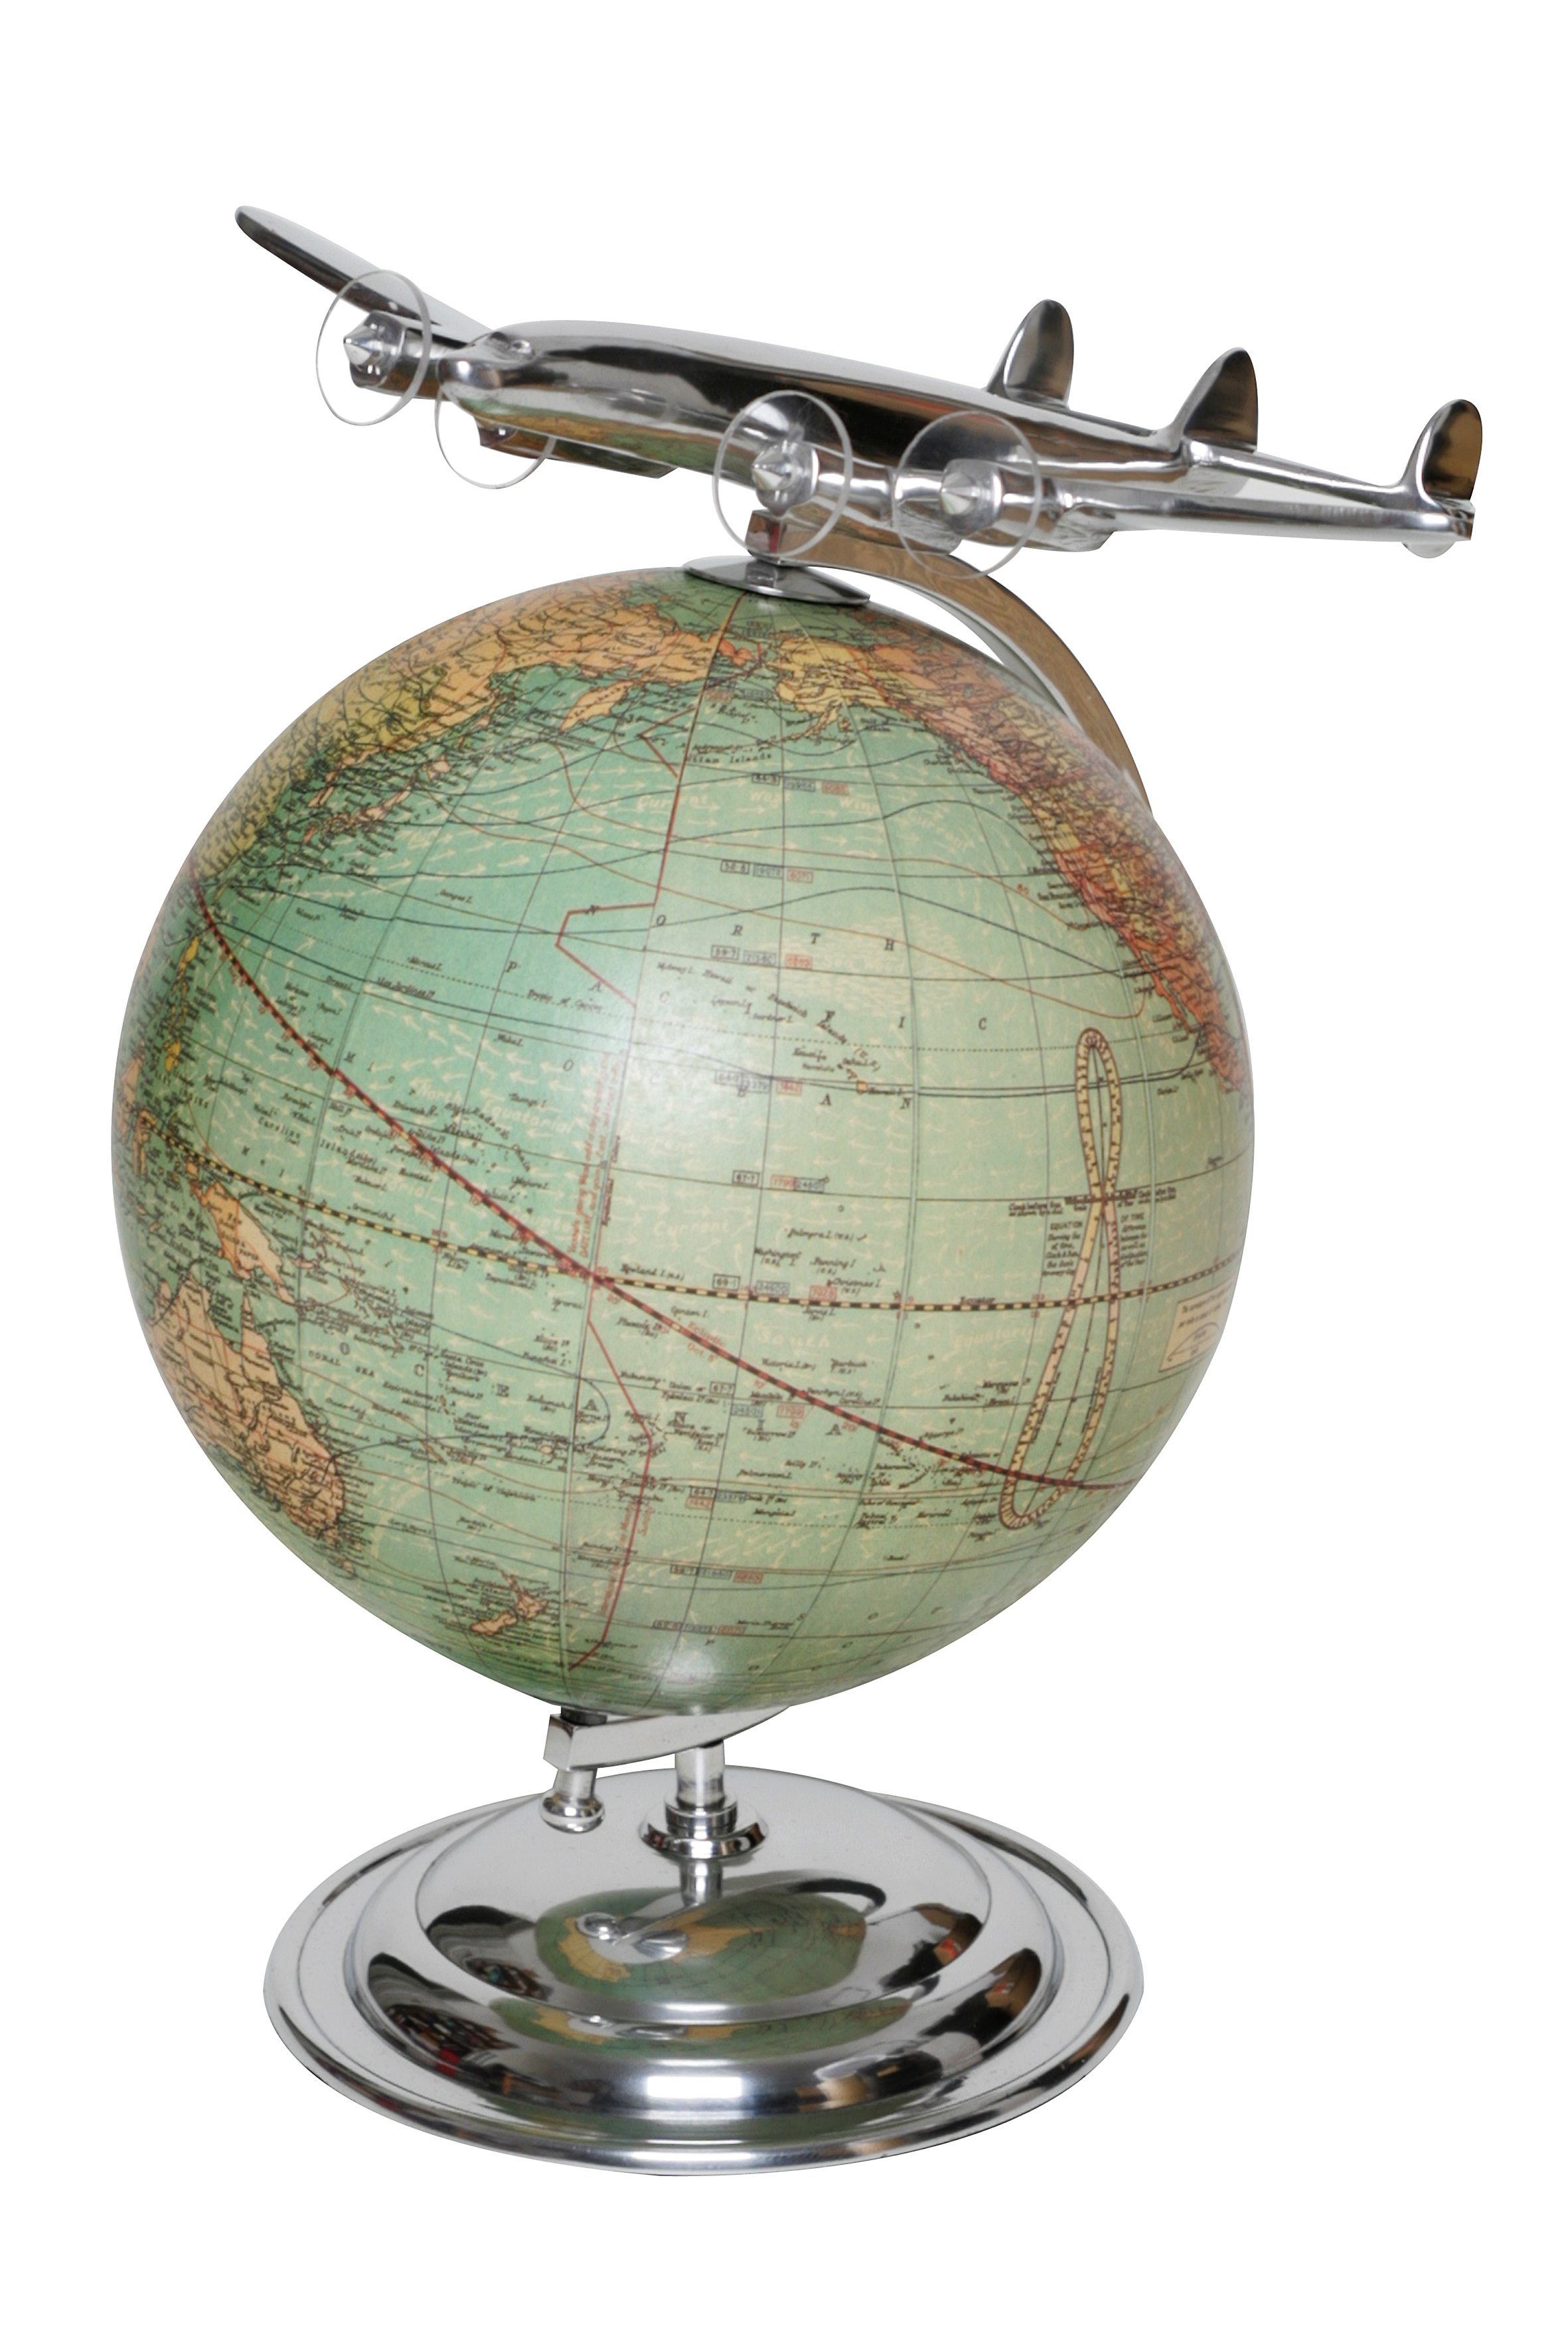 Brillibrum Dekoobjekt Globus mit Flugzeug Art Déco Antiklook Modellflugzeug Erde Welt Weltkugel Erdkugel Deko Flieger Silber Kugel